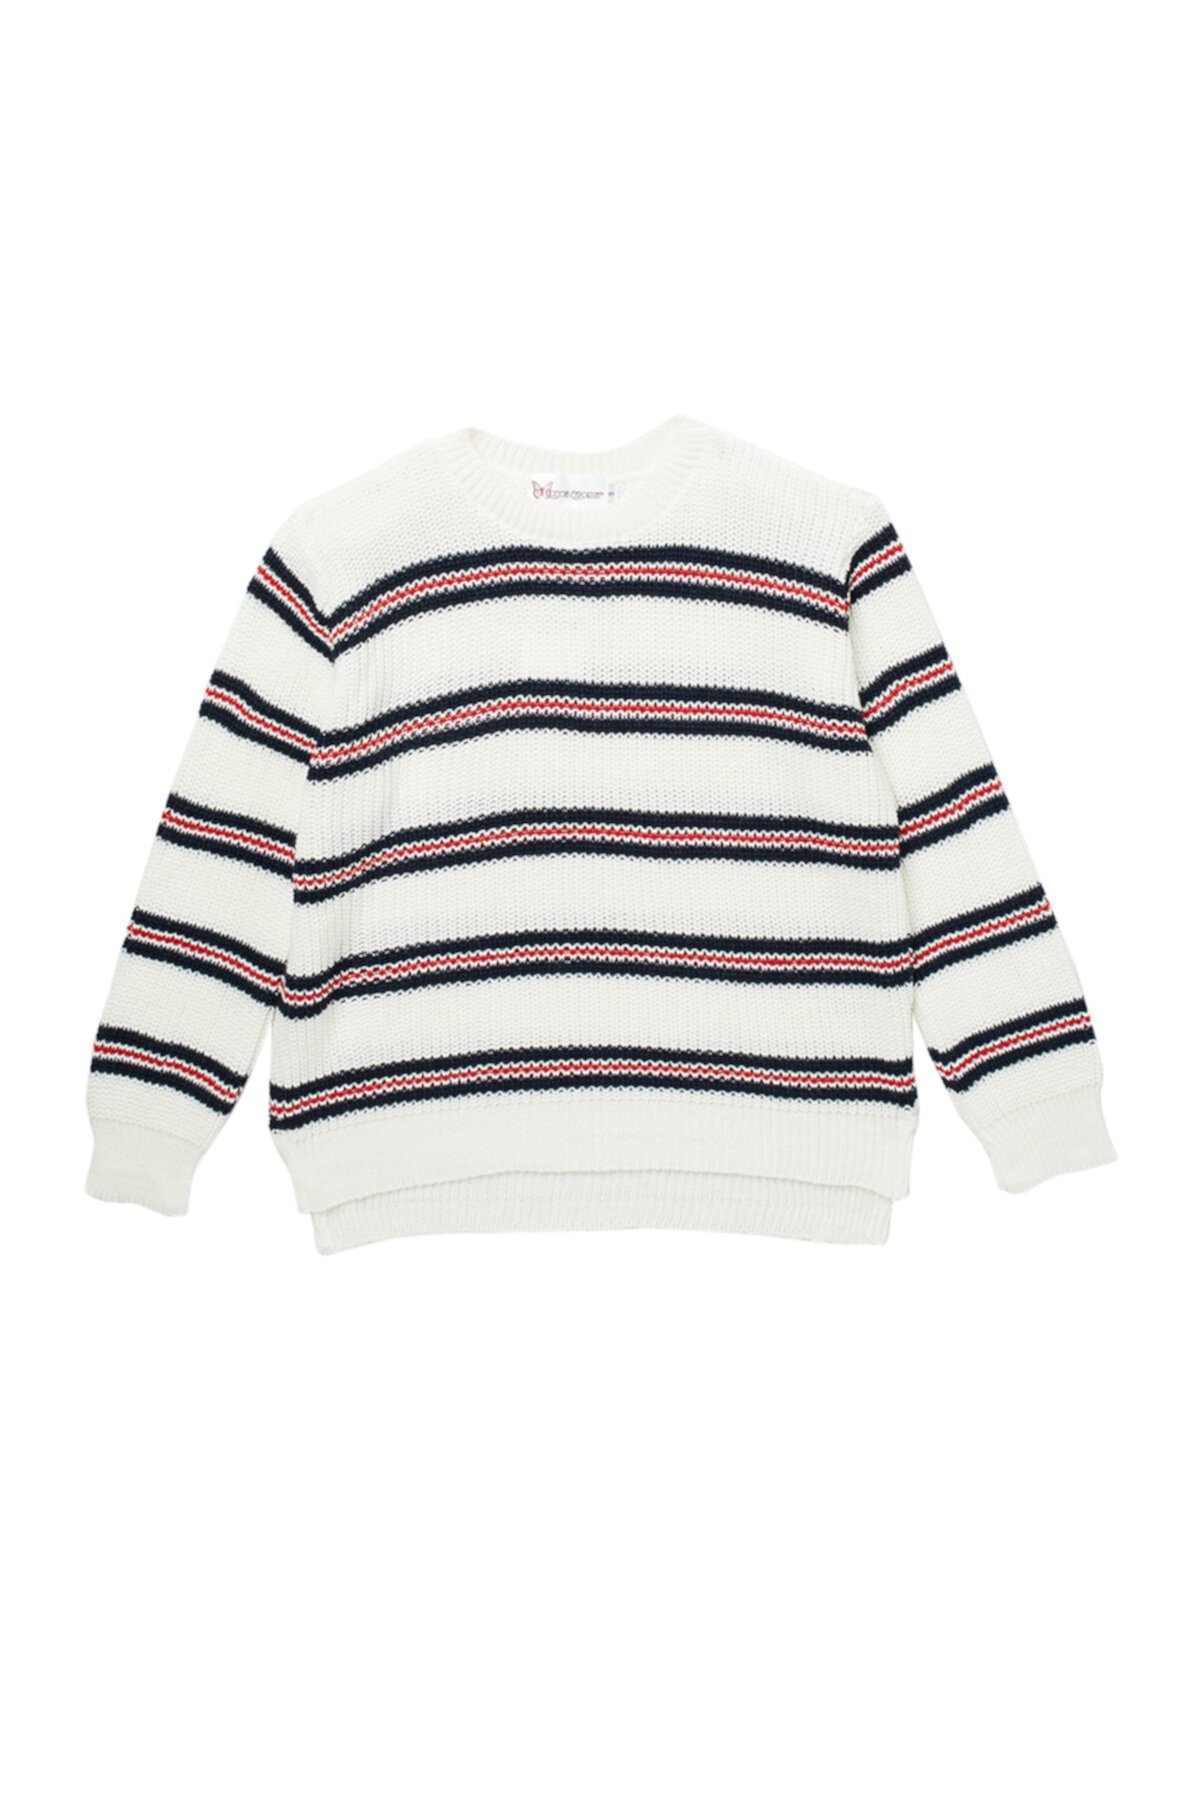 Полосатый пуловер-свитер (для больших девочек) Cotton Emporium